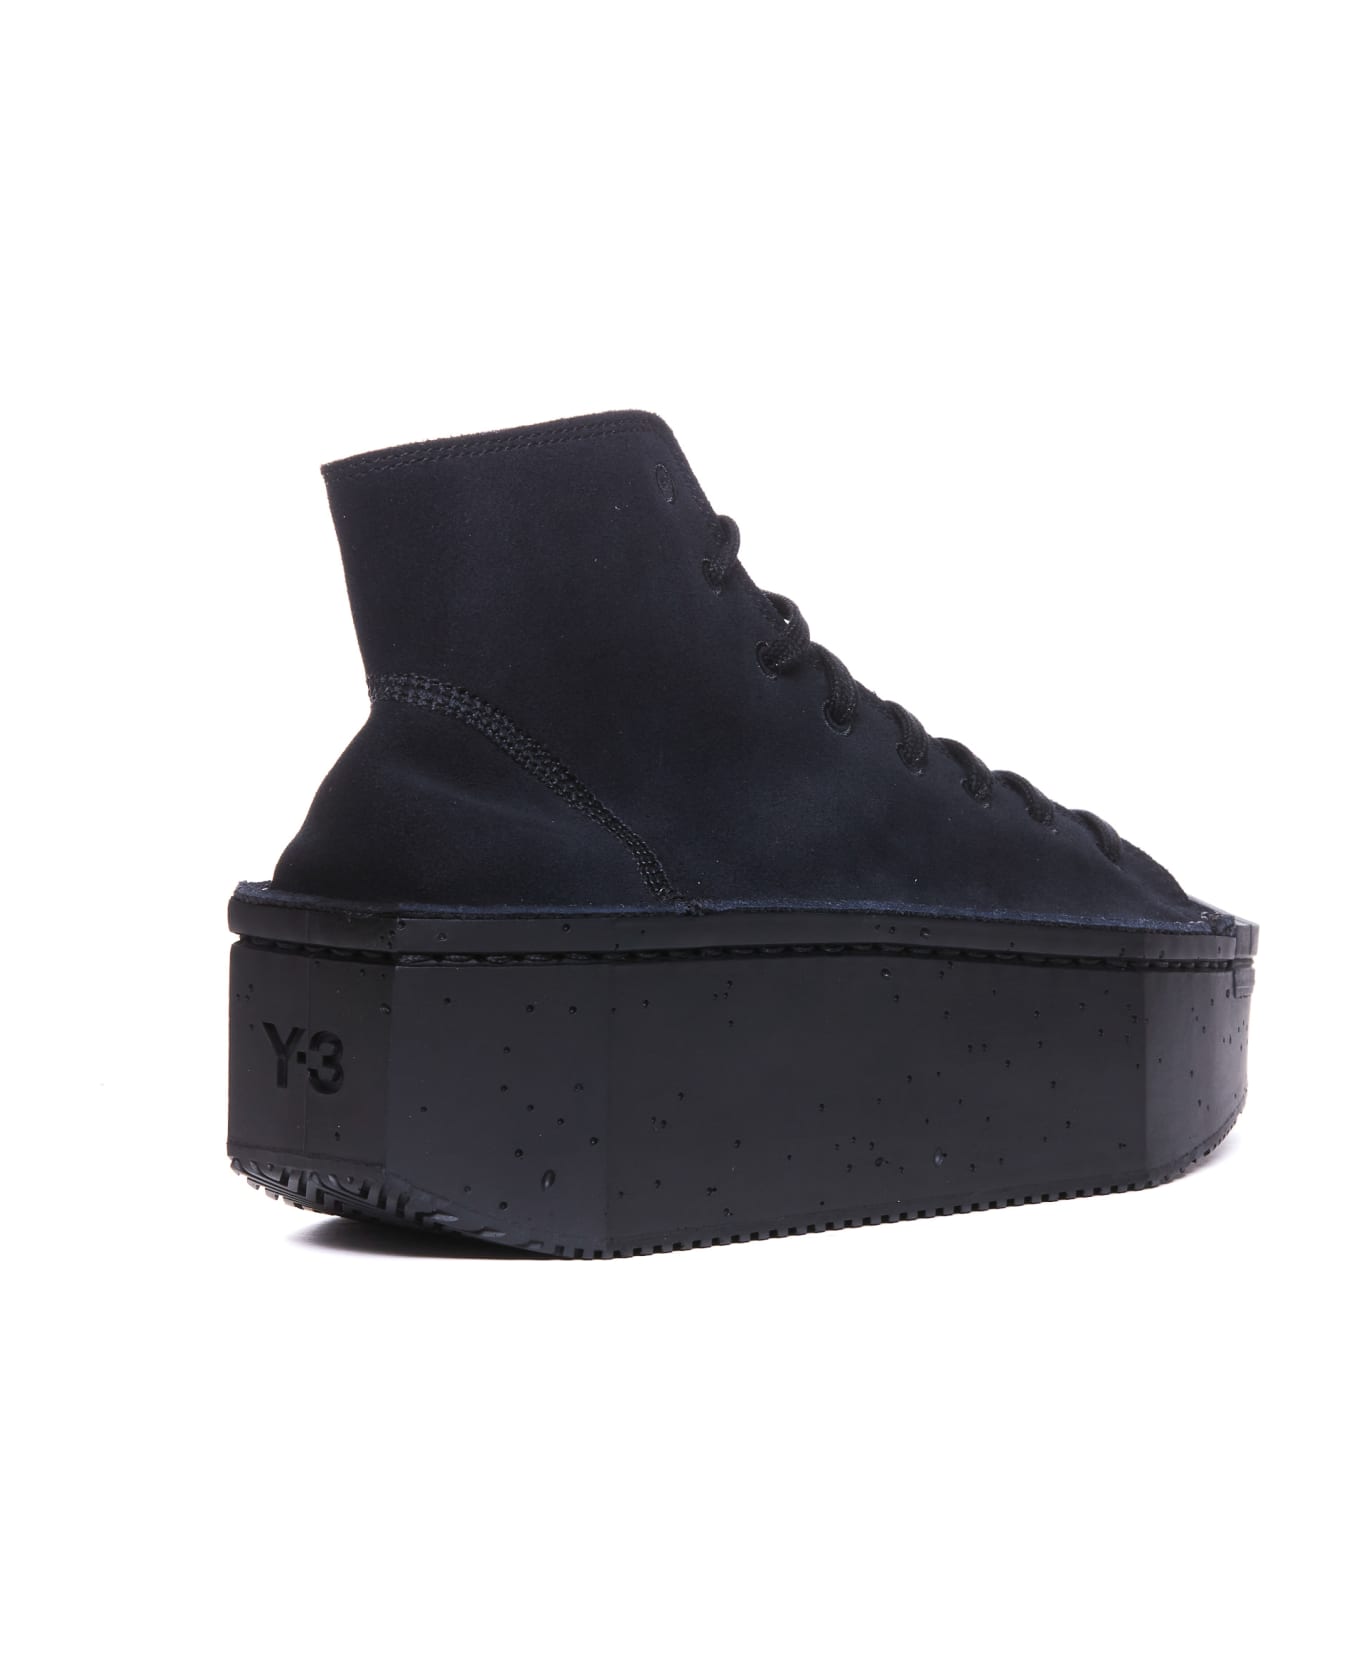 Y-3 Kyasu Hi Sneakers - Black